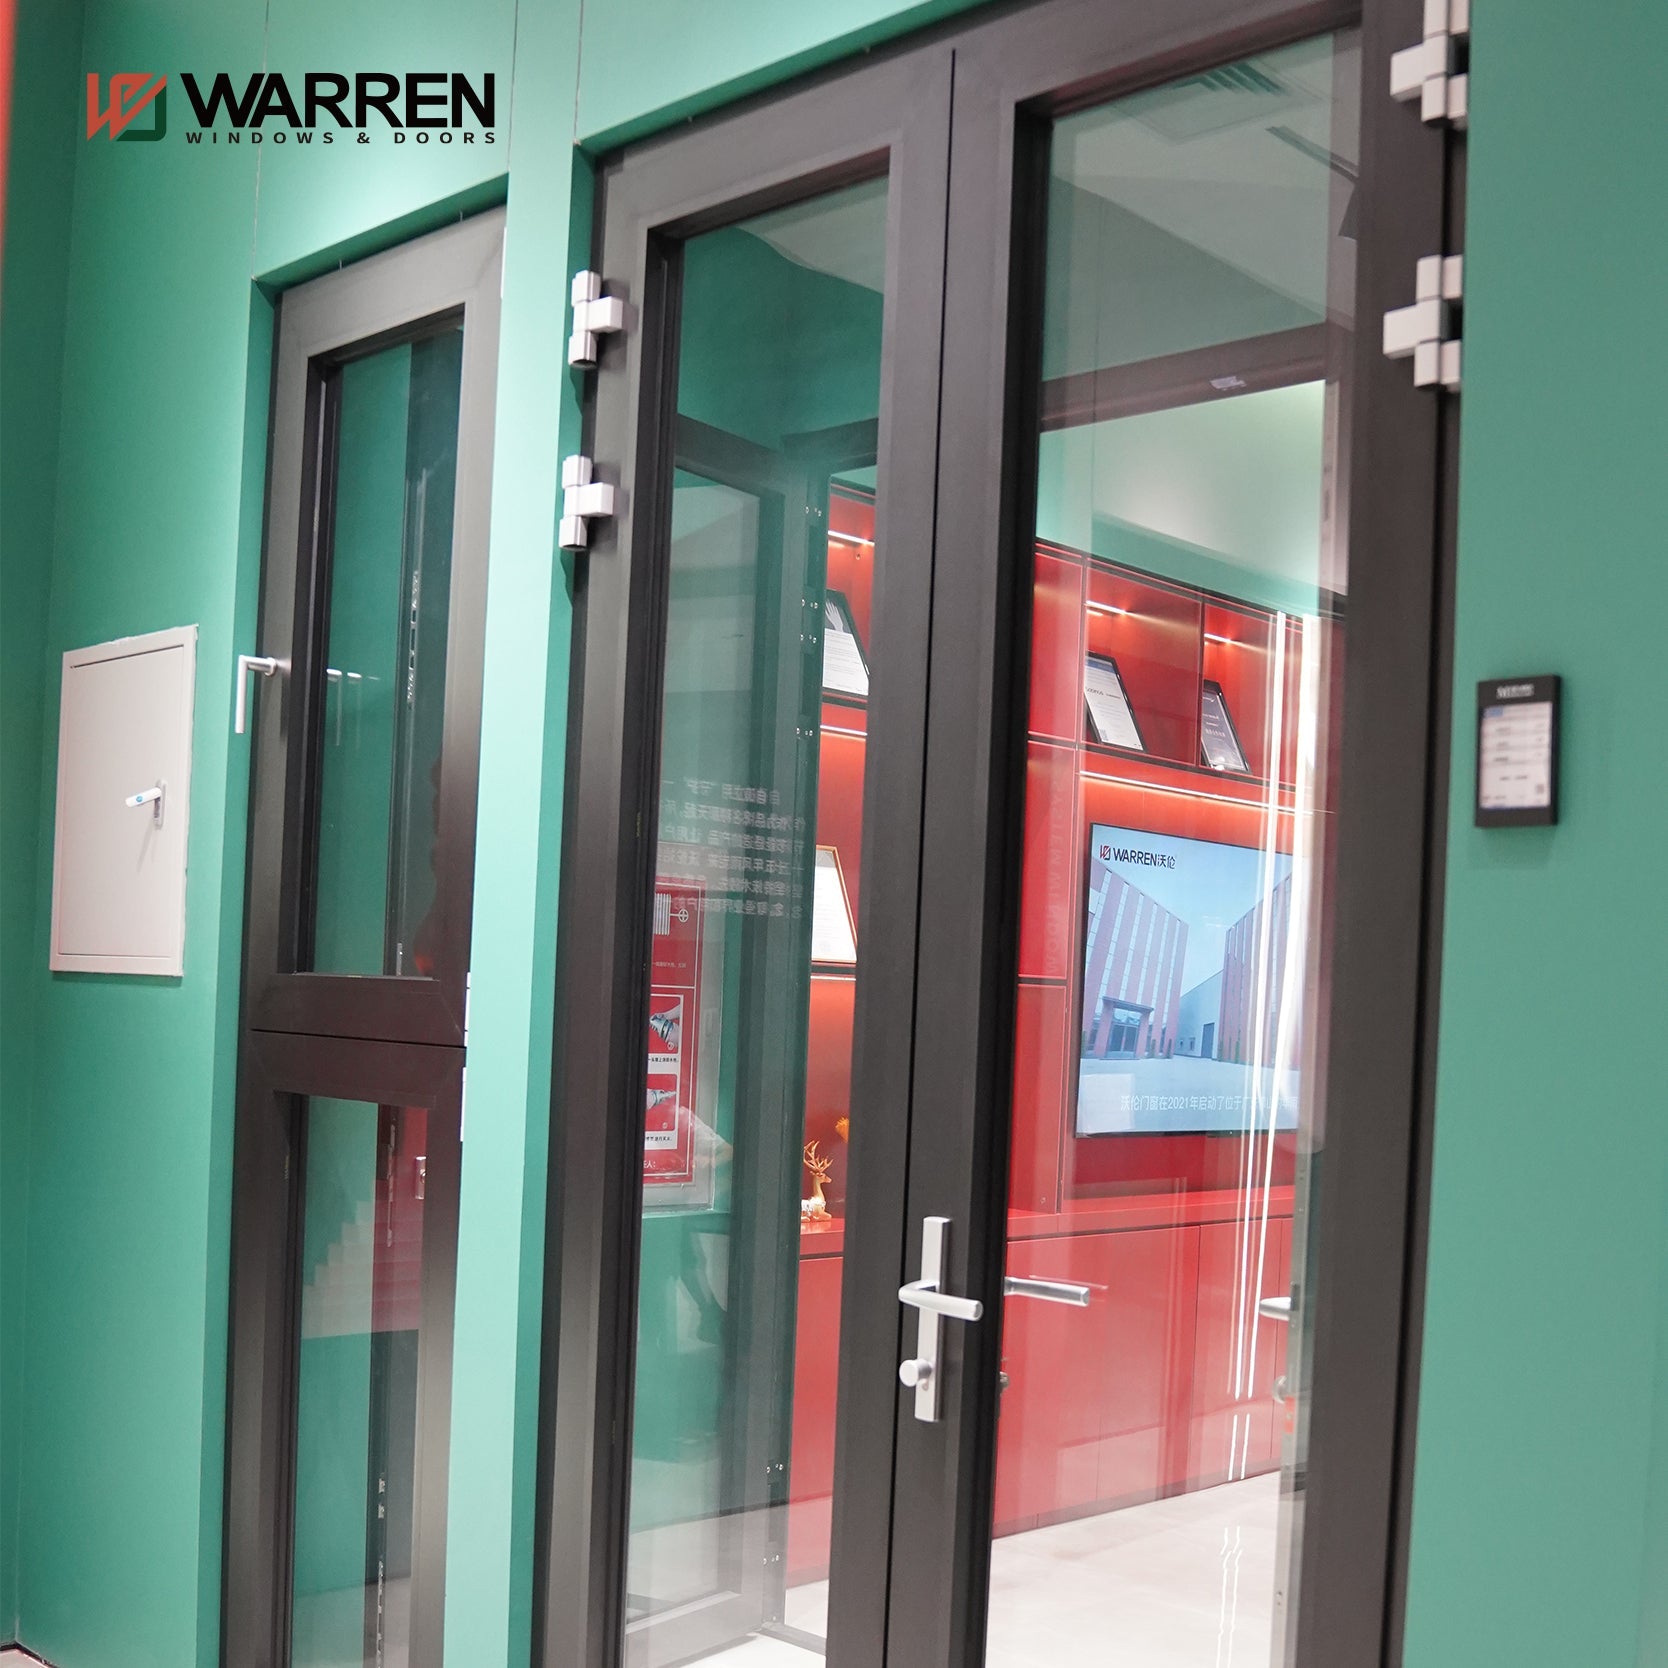 Warren US Villa Main Exterior Door for house Simple Design Wooden Door Sidelights Modern Solid Wood Pivot Entry Doors